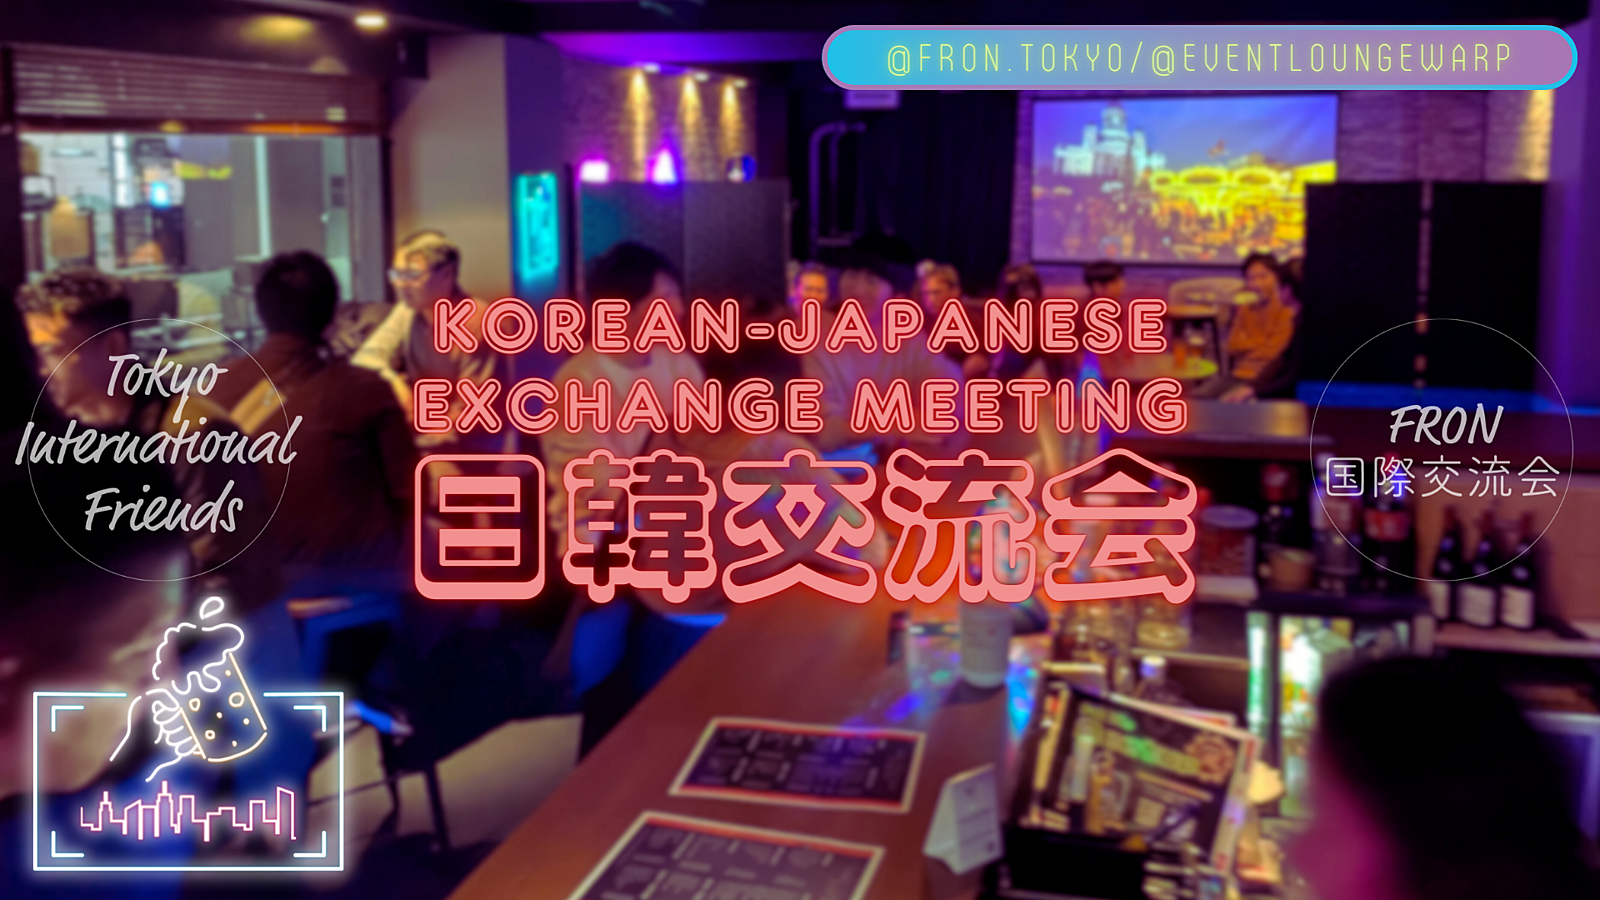 4/12(金)19:00~ 日韓交流会(한일 교류회) 🇰🇷 Korean-Japanese Exchange Meeting☆初心者歓迎♪